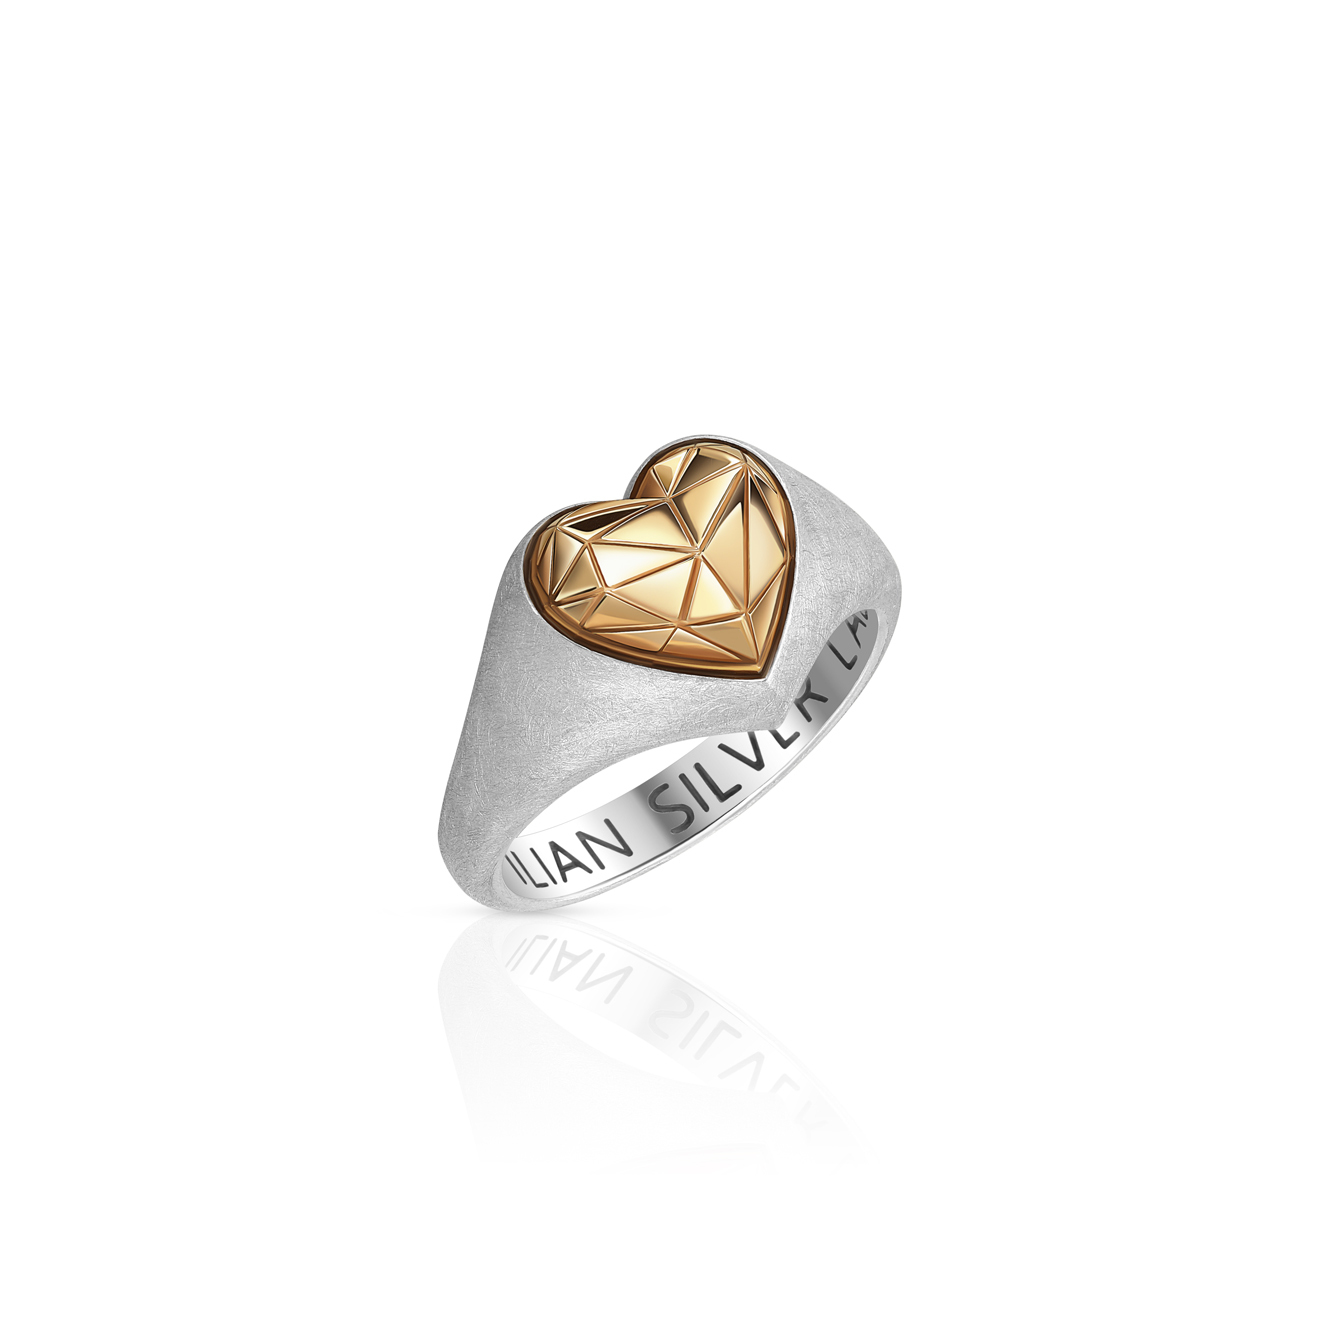 Maximilian Silver Label Кольцо-сердце из серебра Червовый валет позолоченное матовое maximilian silver label матовое кольцо из серебра